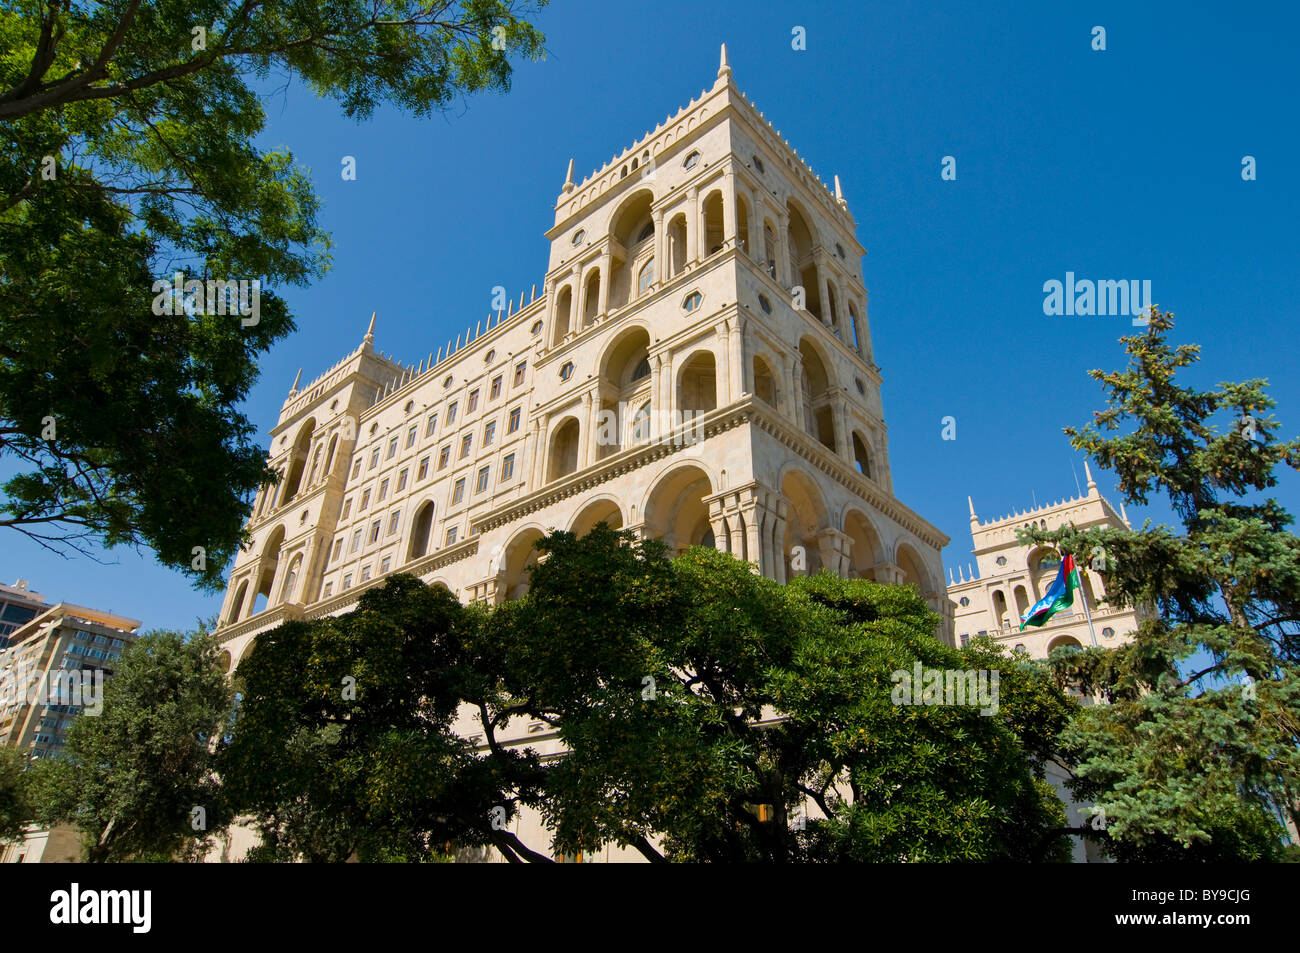 Le parlement de l'Azerbaïdjan, Bakou, Azerbaïdjan, Moyen-Orient Banque D'Images